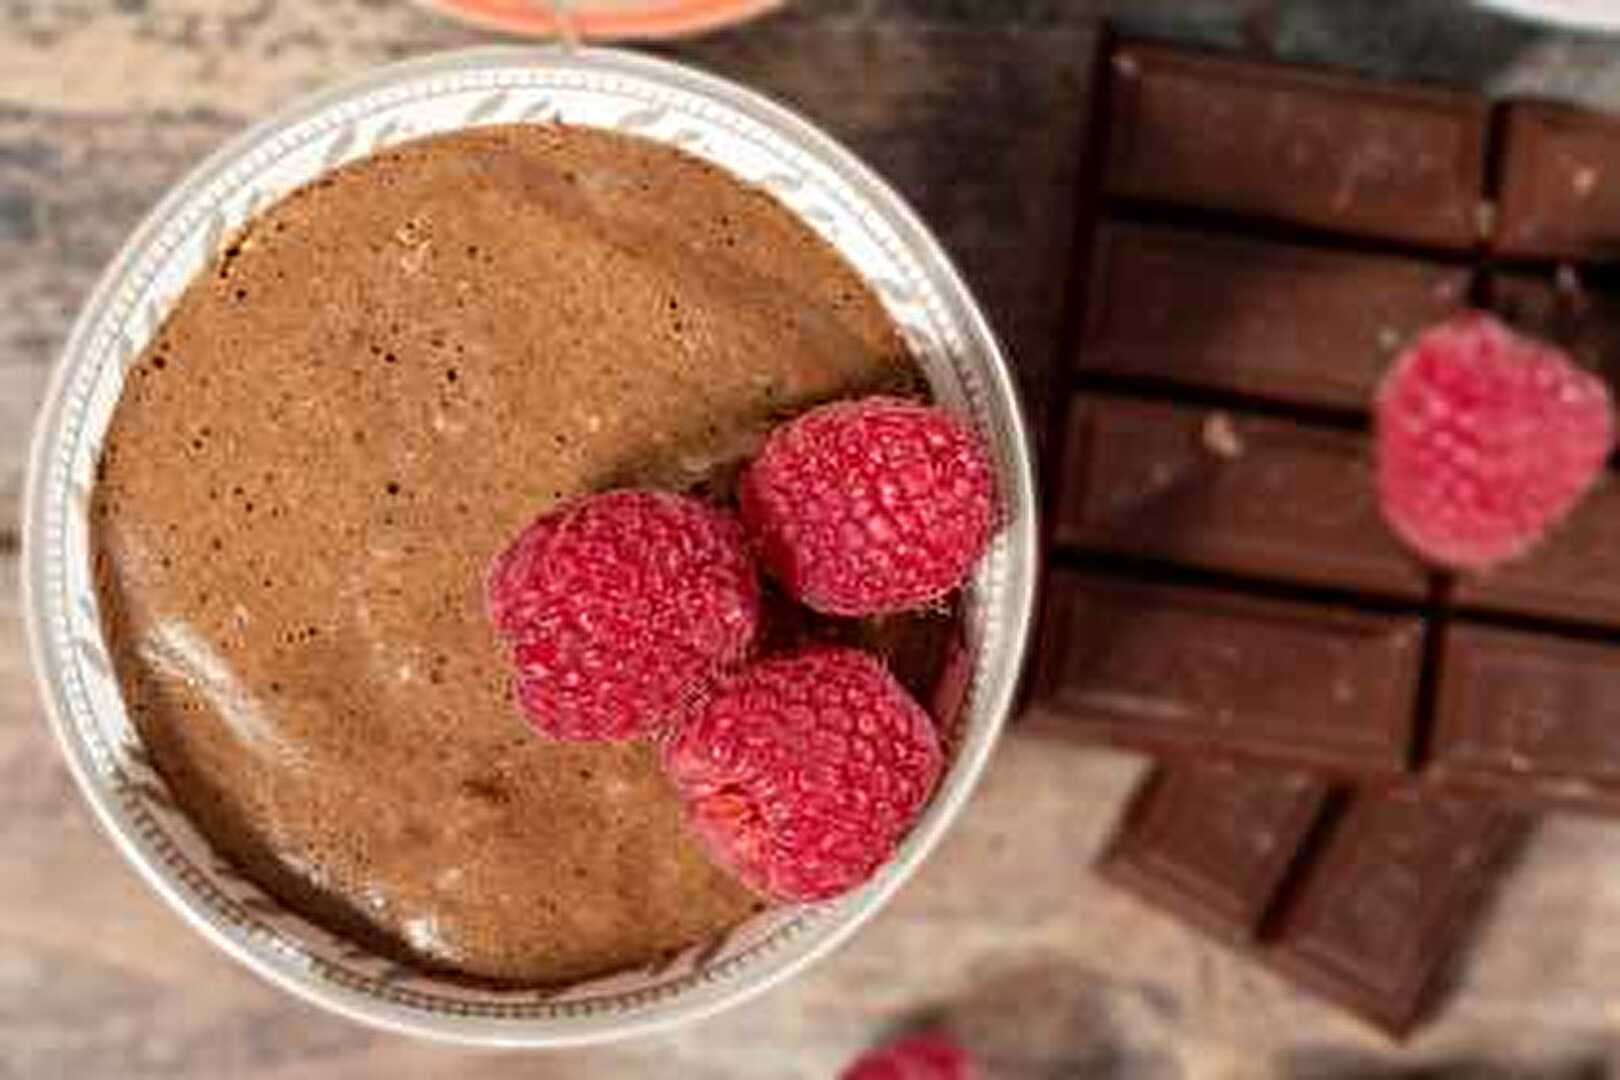 Mousse au chocolat et framboises, la recette facile et rapide à réaliser